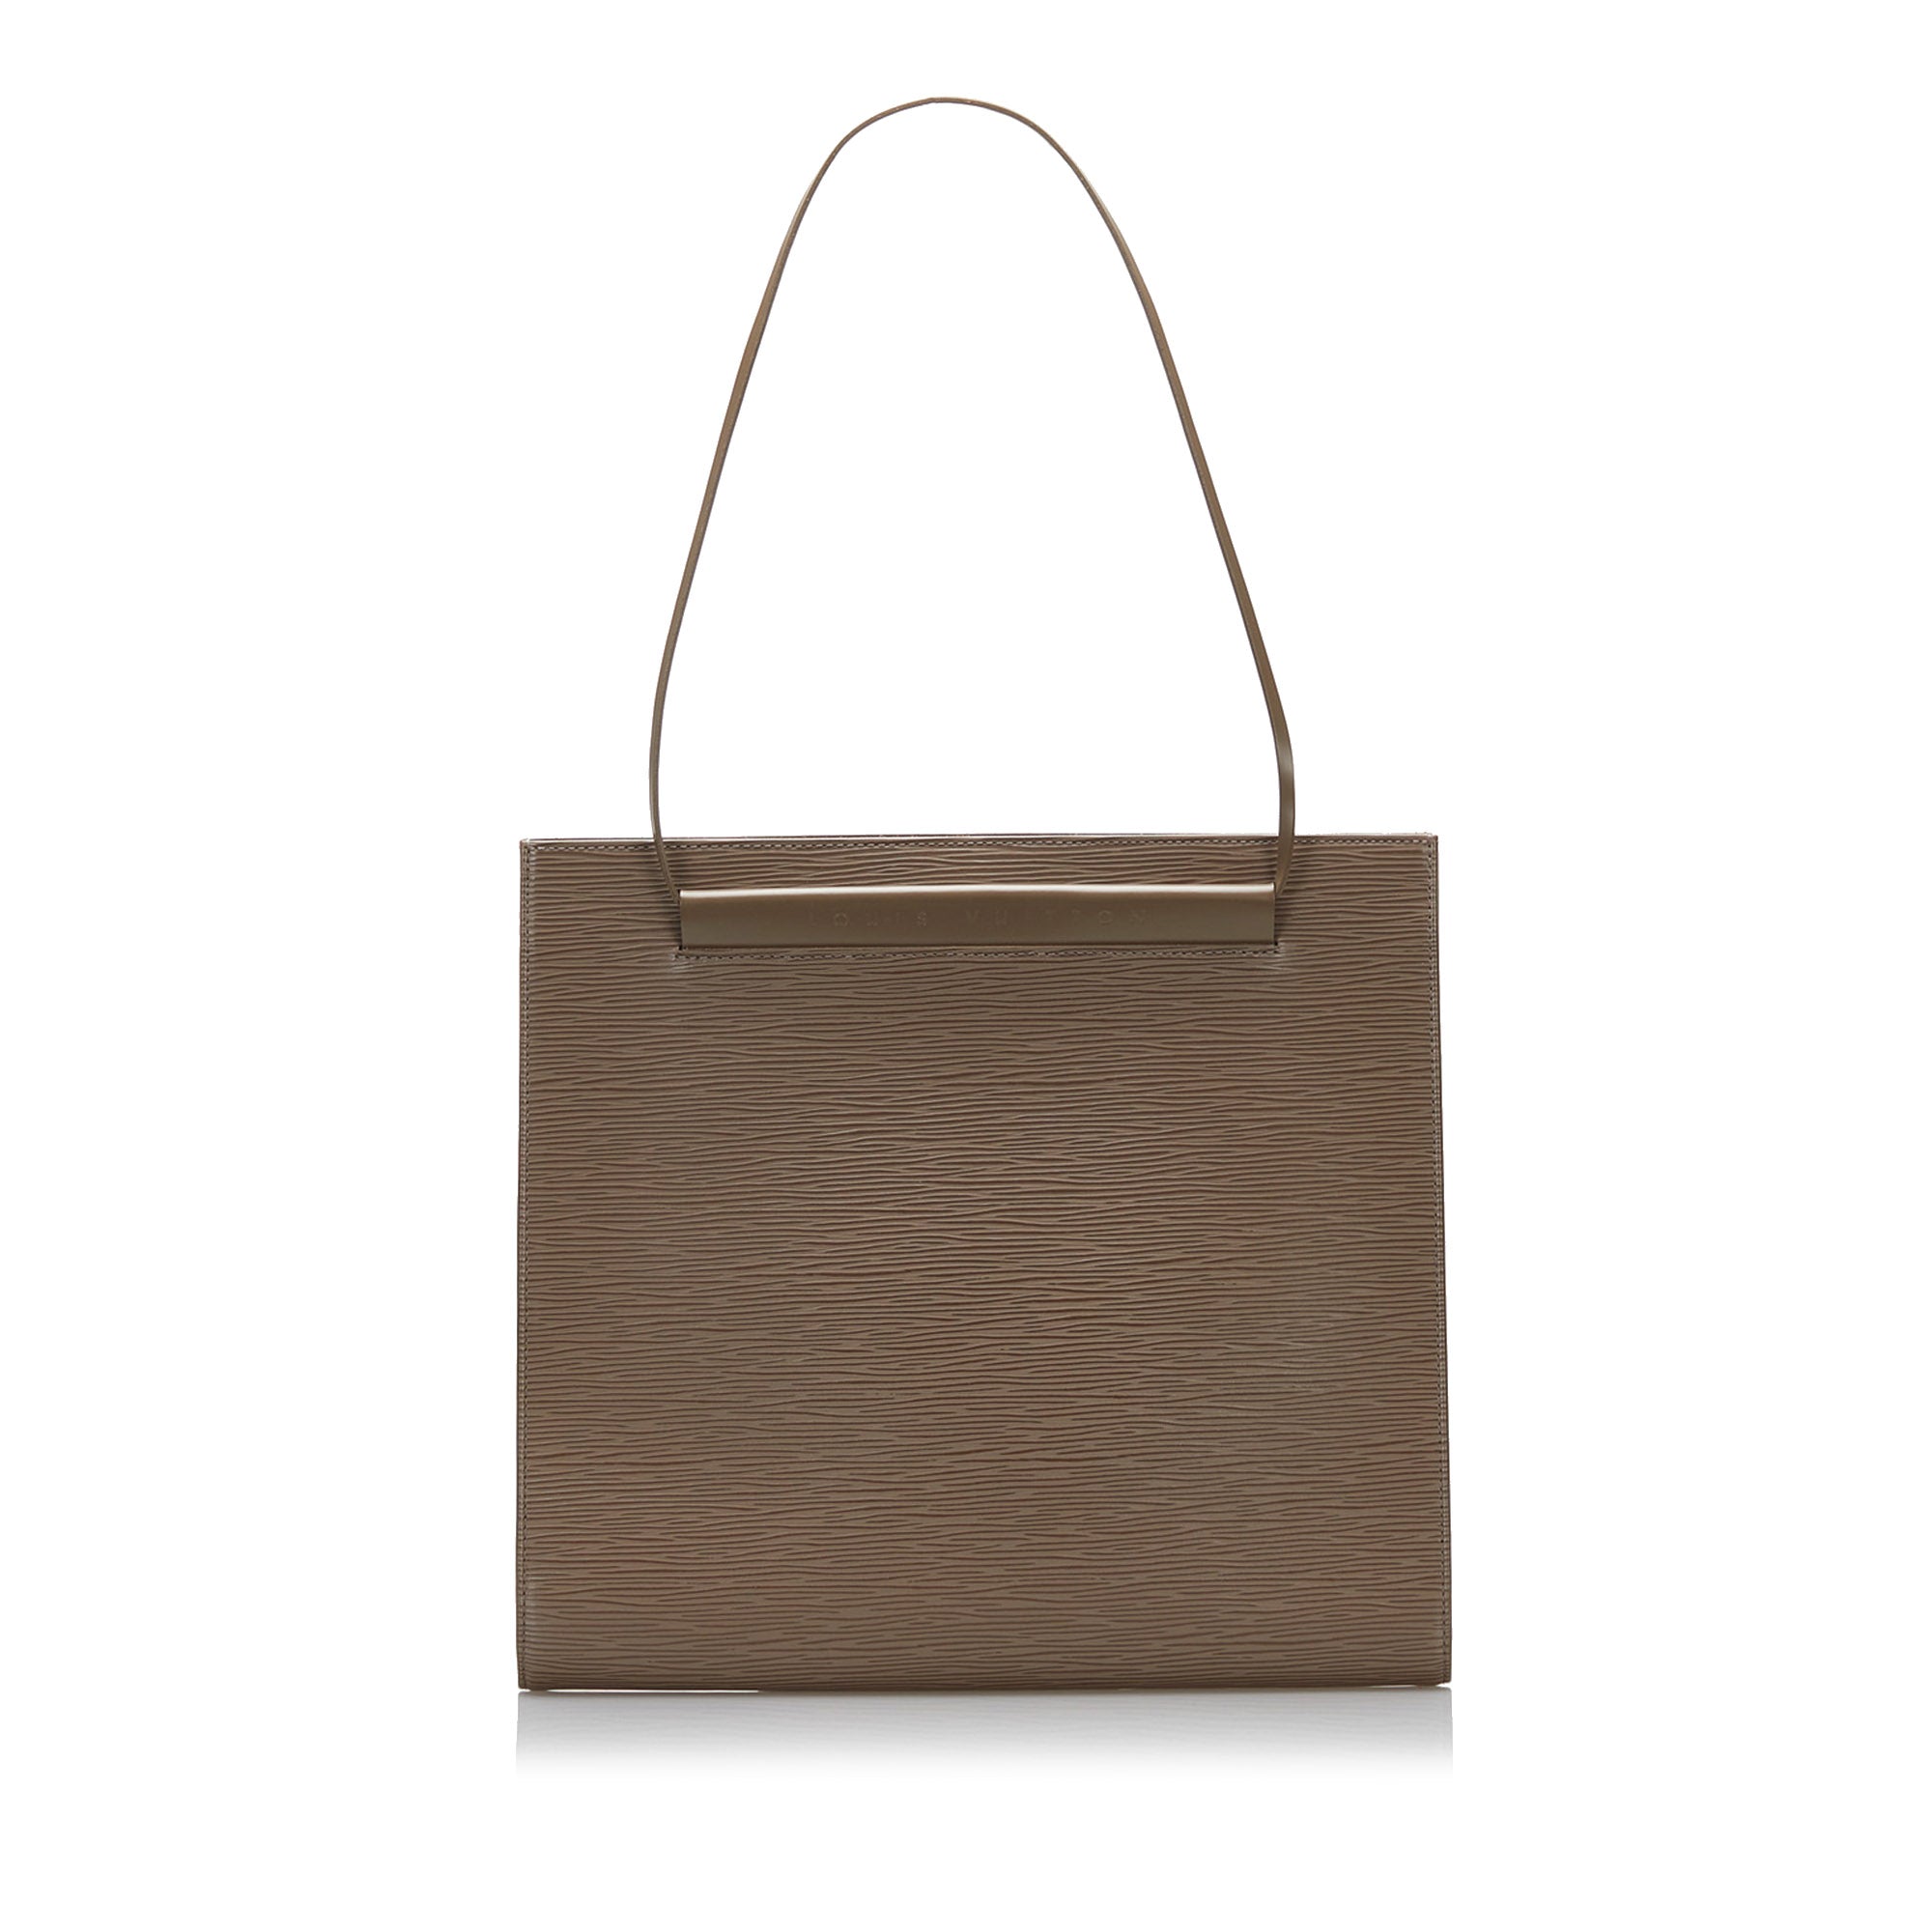 Best Deals for Denim Louis Vuitton Handbag